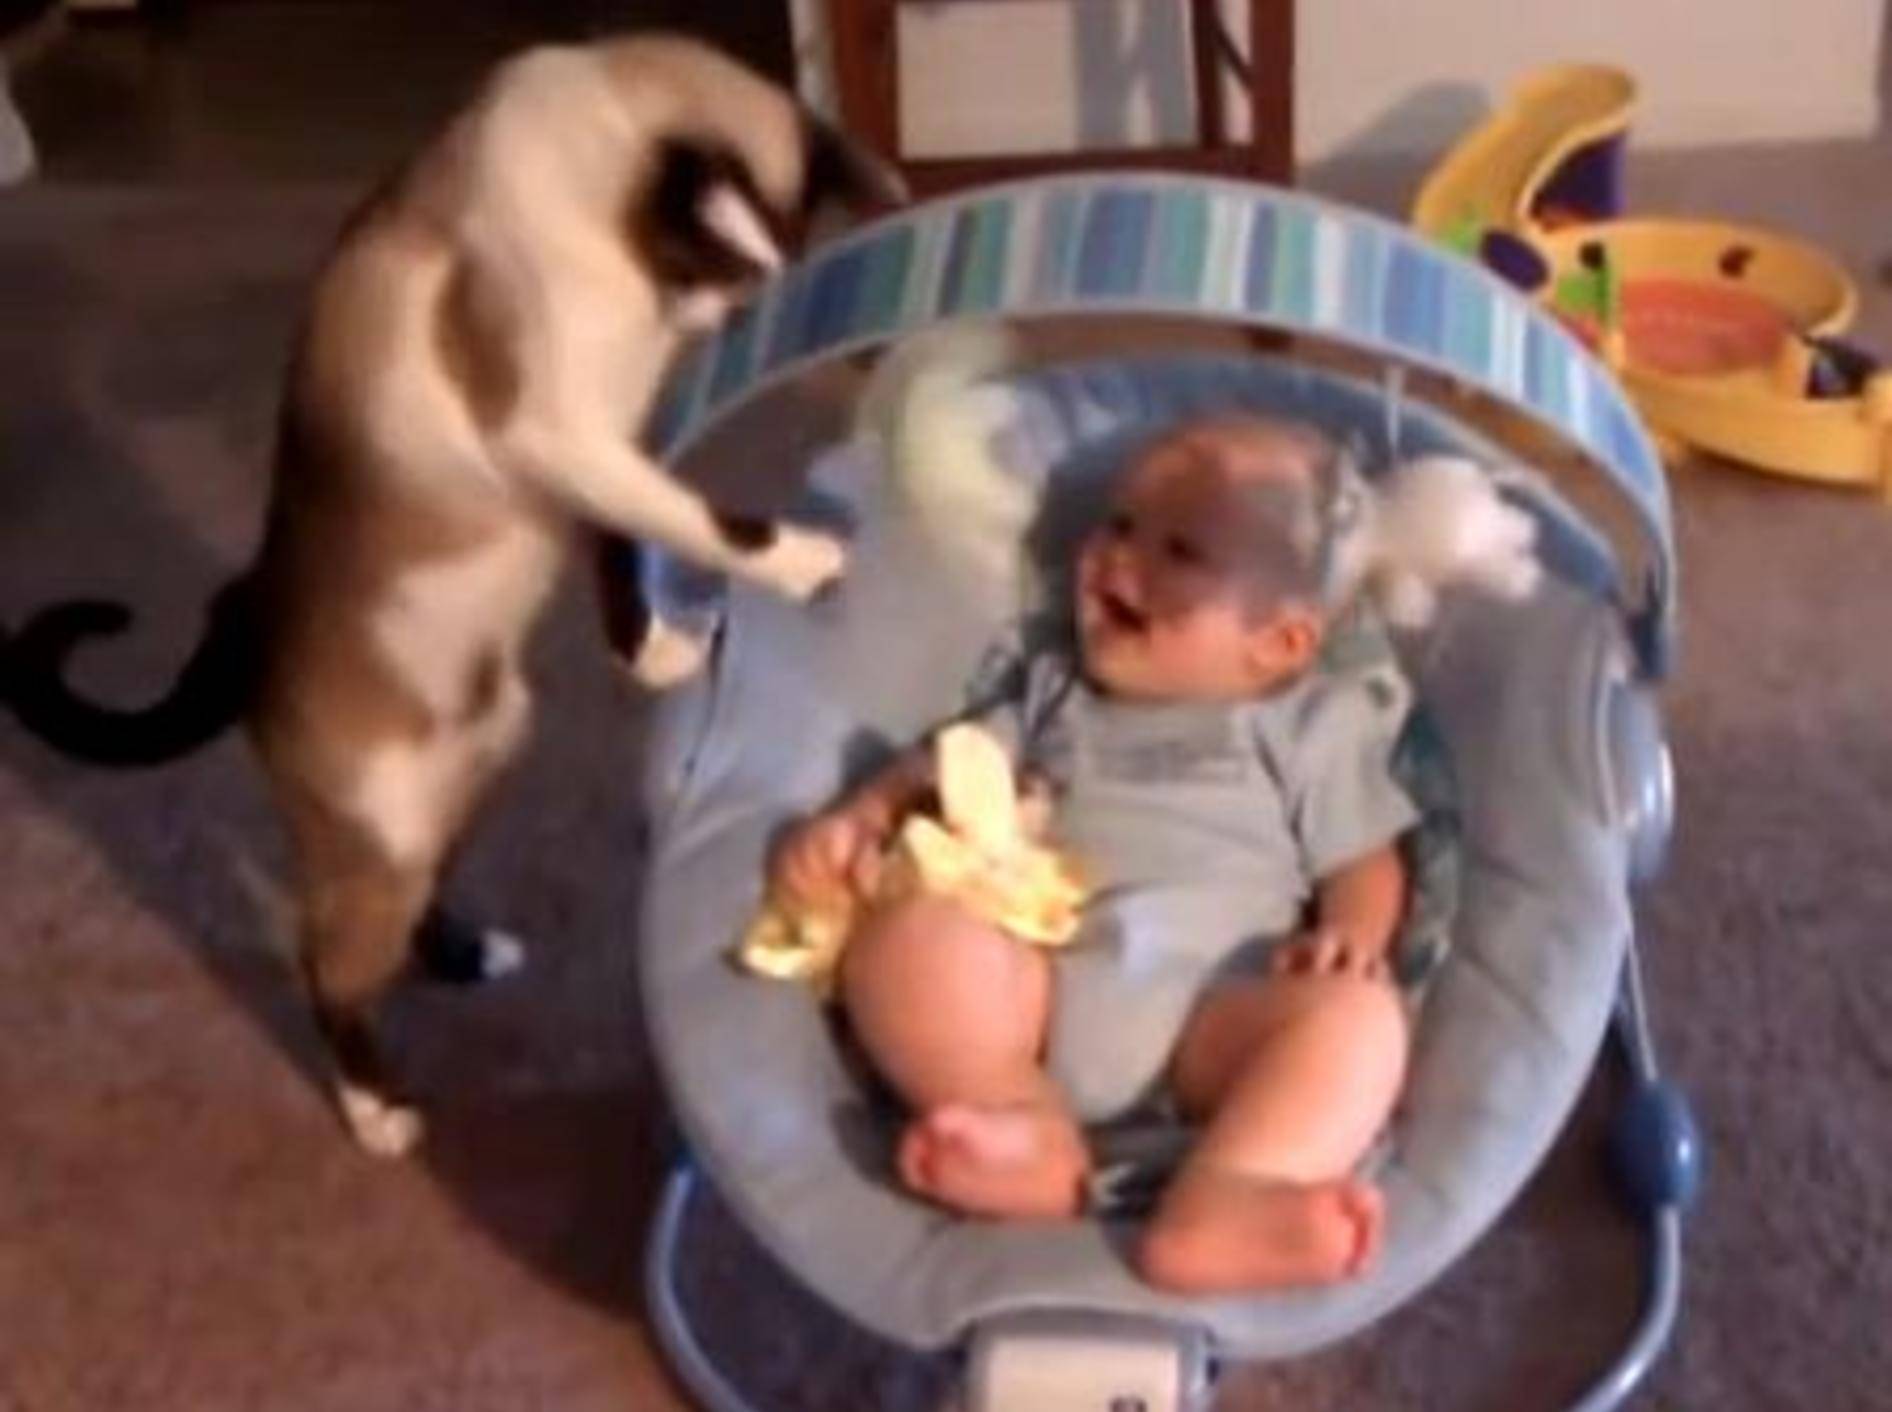 Süße Babysitter-Katze bringt Baby zum Lachen — Bild. Youtube / bowl300X02·